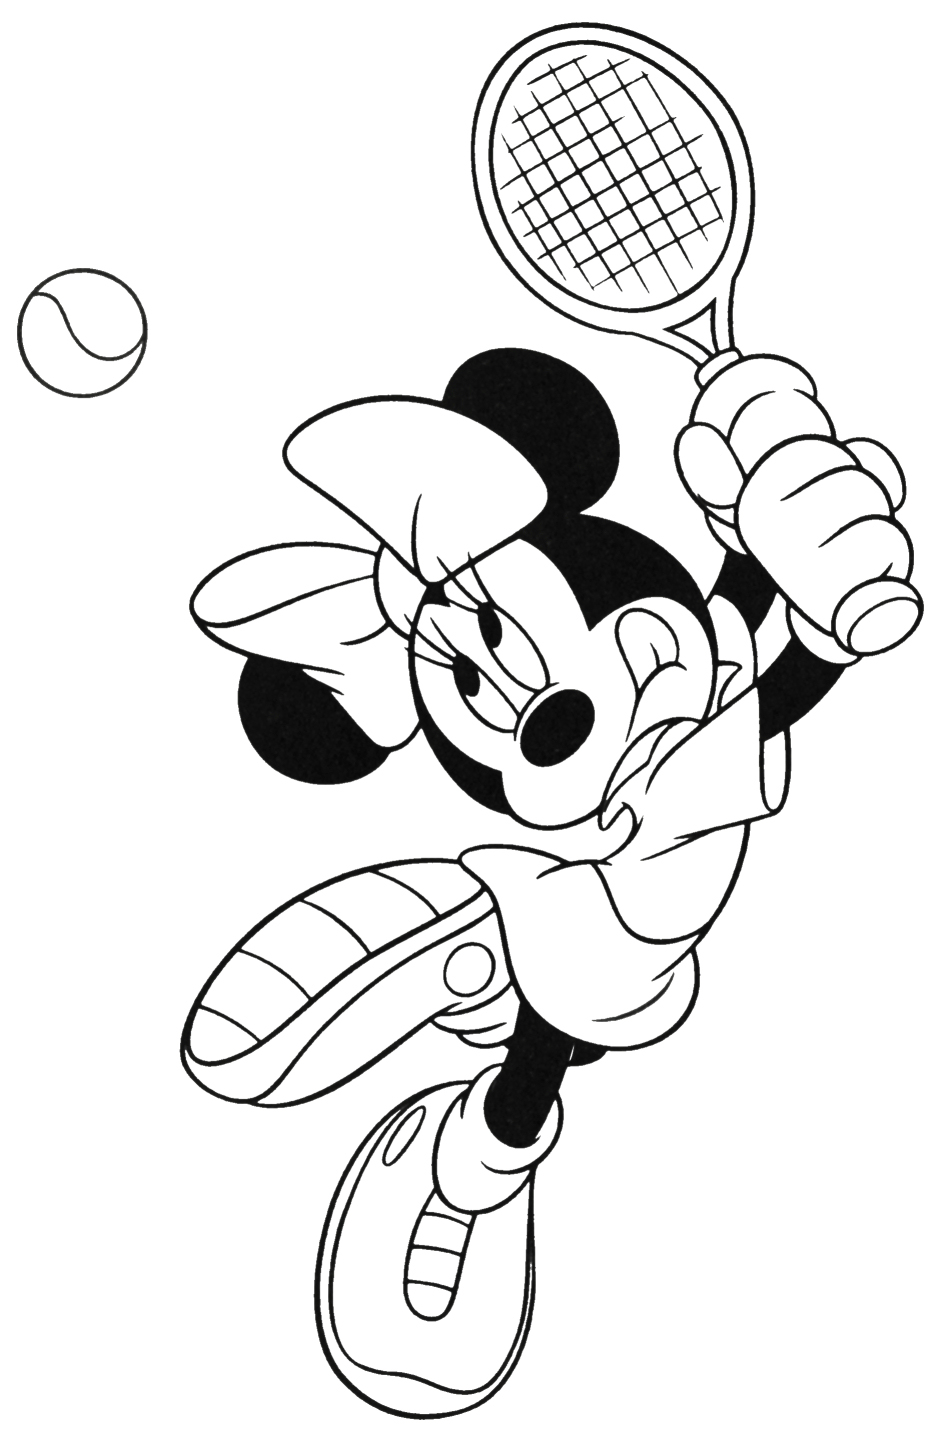 Минни Маус играет в теннис (теннис)